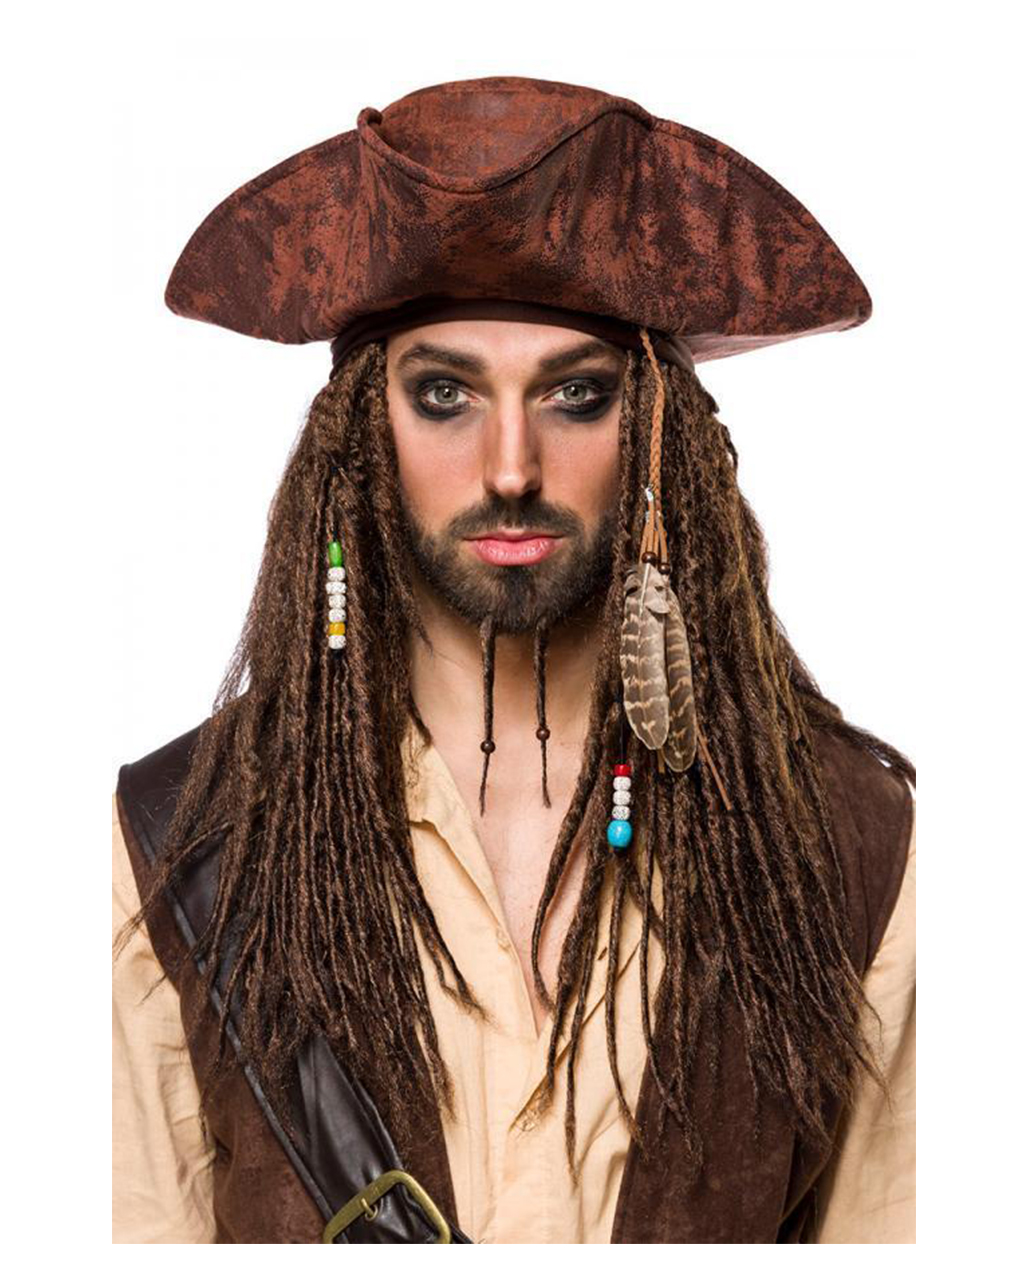 7 tlg. Piraten kostüm Herren,Pirat Seeräuber Gr L u XL komplett 8353